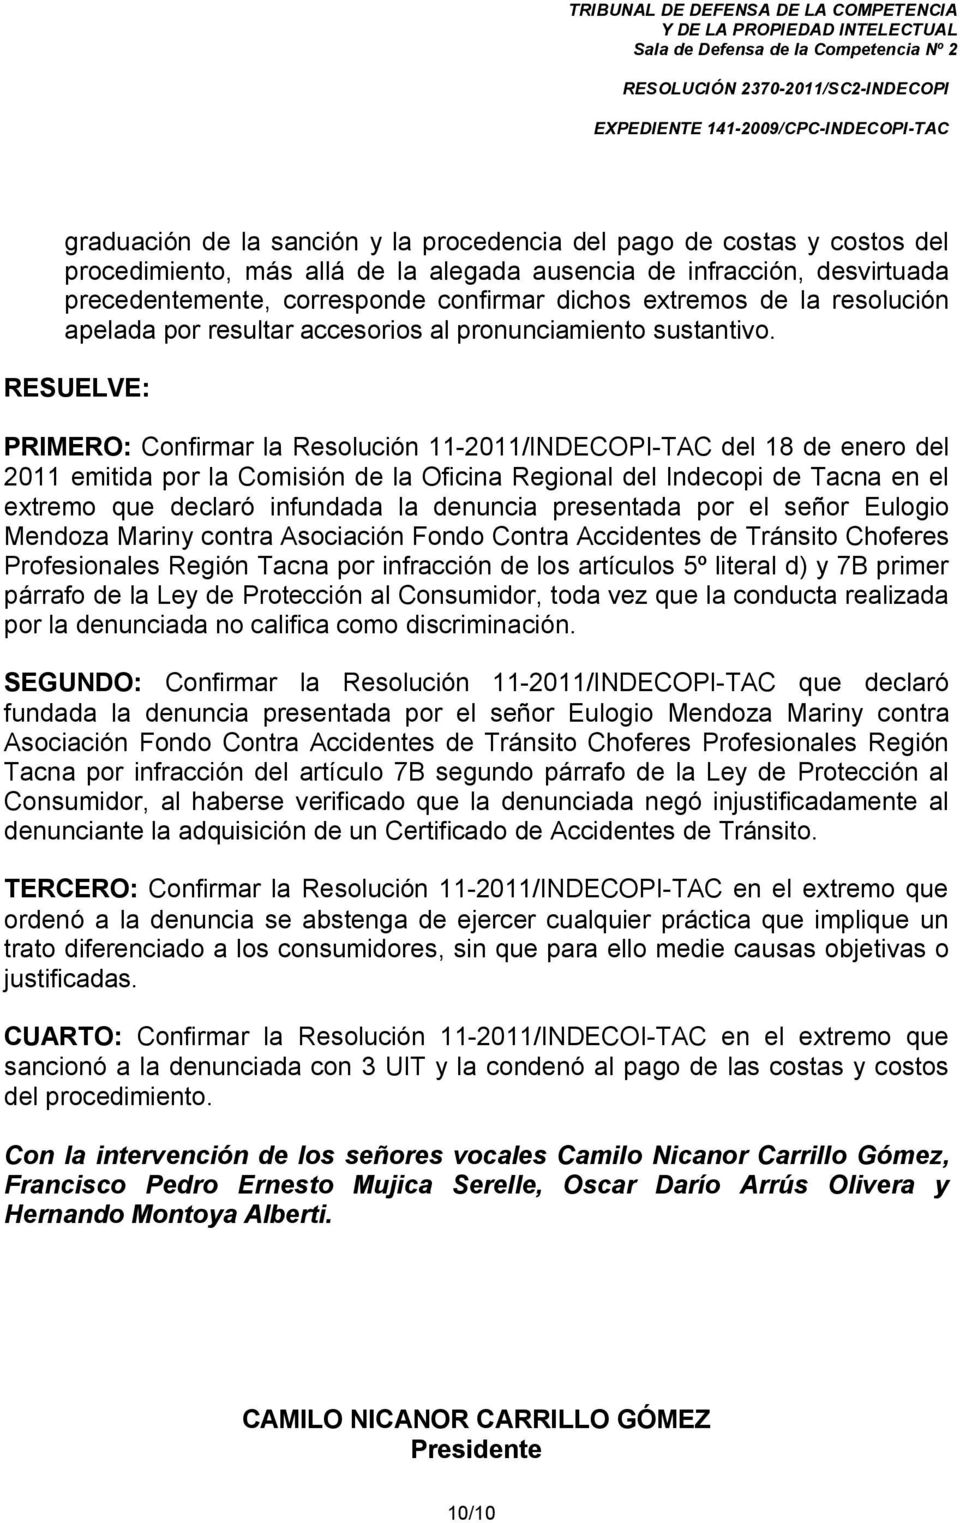 RESUELVE: PRIMERO: Confirmar la Resolución 11-2011/INDECOPI-TAC del 18 de enero del 2011 emitida por la Comisión de la Oficina Regional del Indecopi de Tacna en el extremo que declaró infundada la